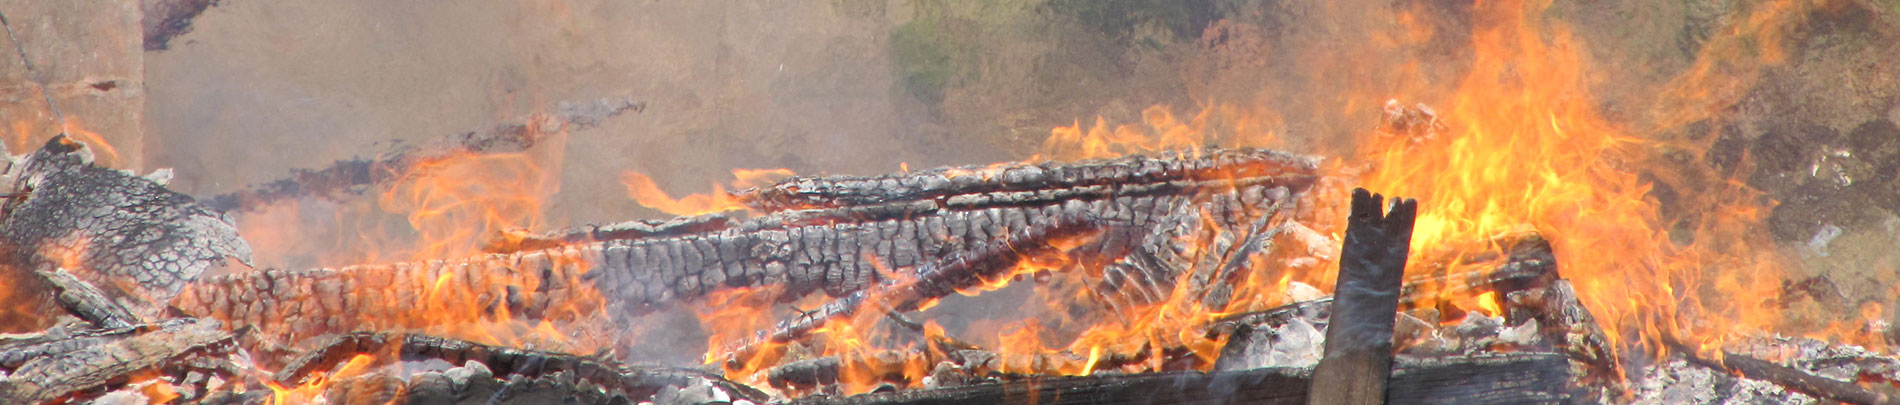 A close up view of an intense fire.